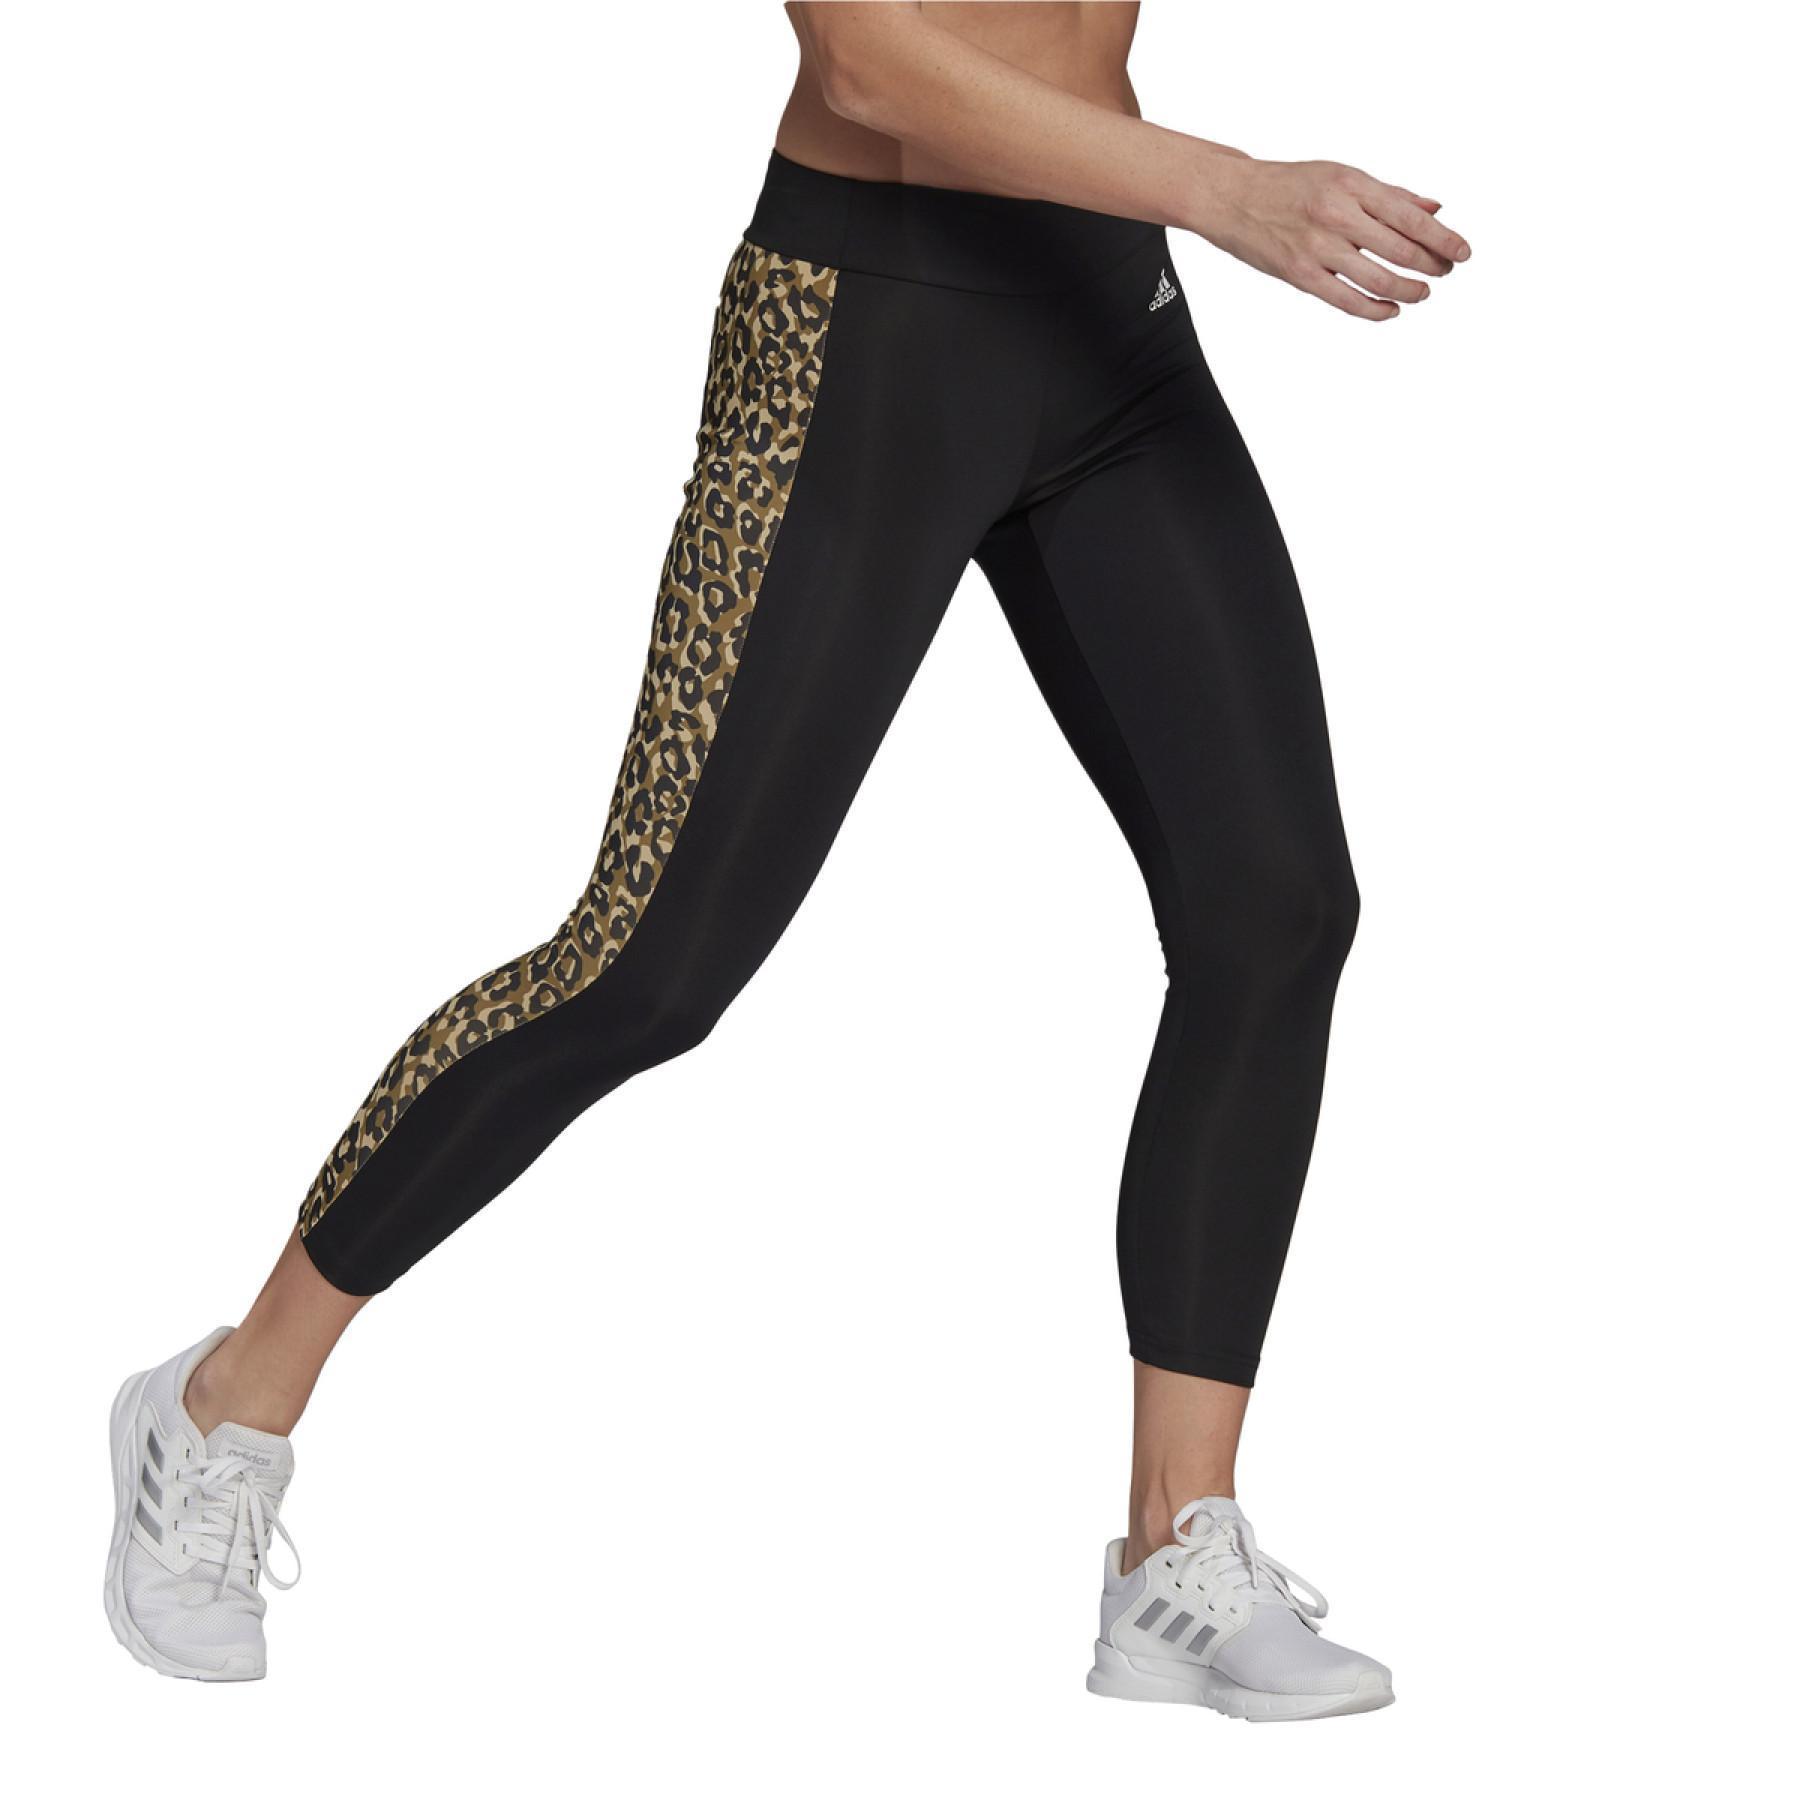 Damen-Leggings adidas Designed To Move Aeoready Leopard Imprimé 7/8